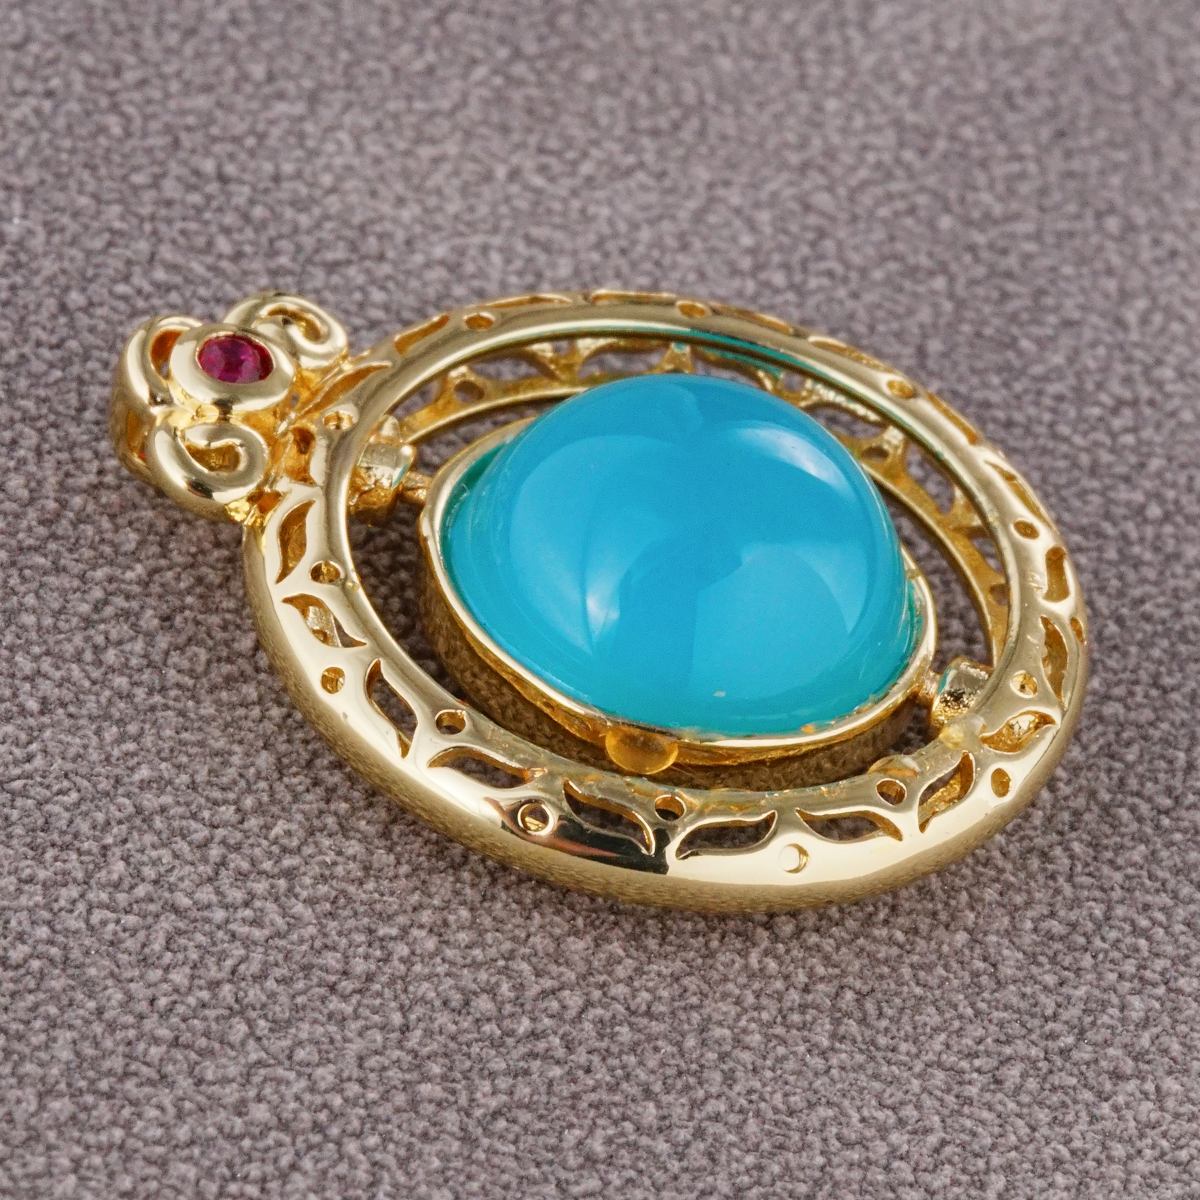 Mavi agate içi boş değerli taş aslan kolye kolye mobil kolye kolyeler döner kolye 14 k altın mezuniyet zinciri moda mücevher takı kadın mücevher mücevher mücevherler